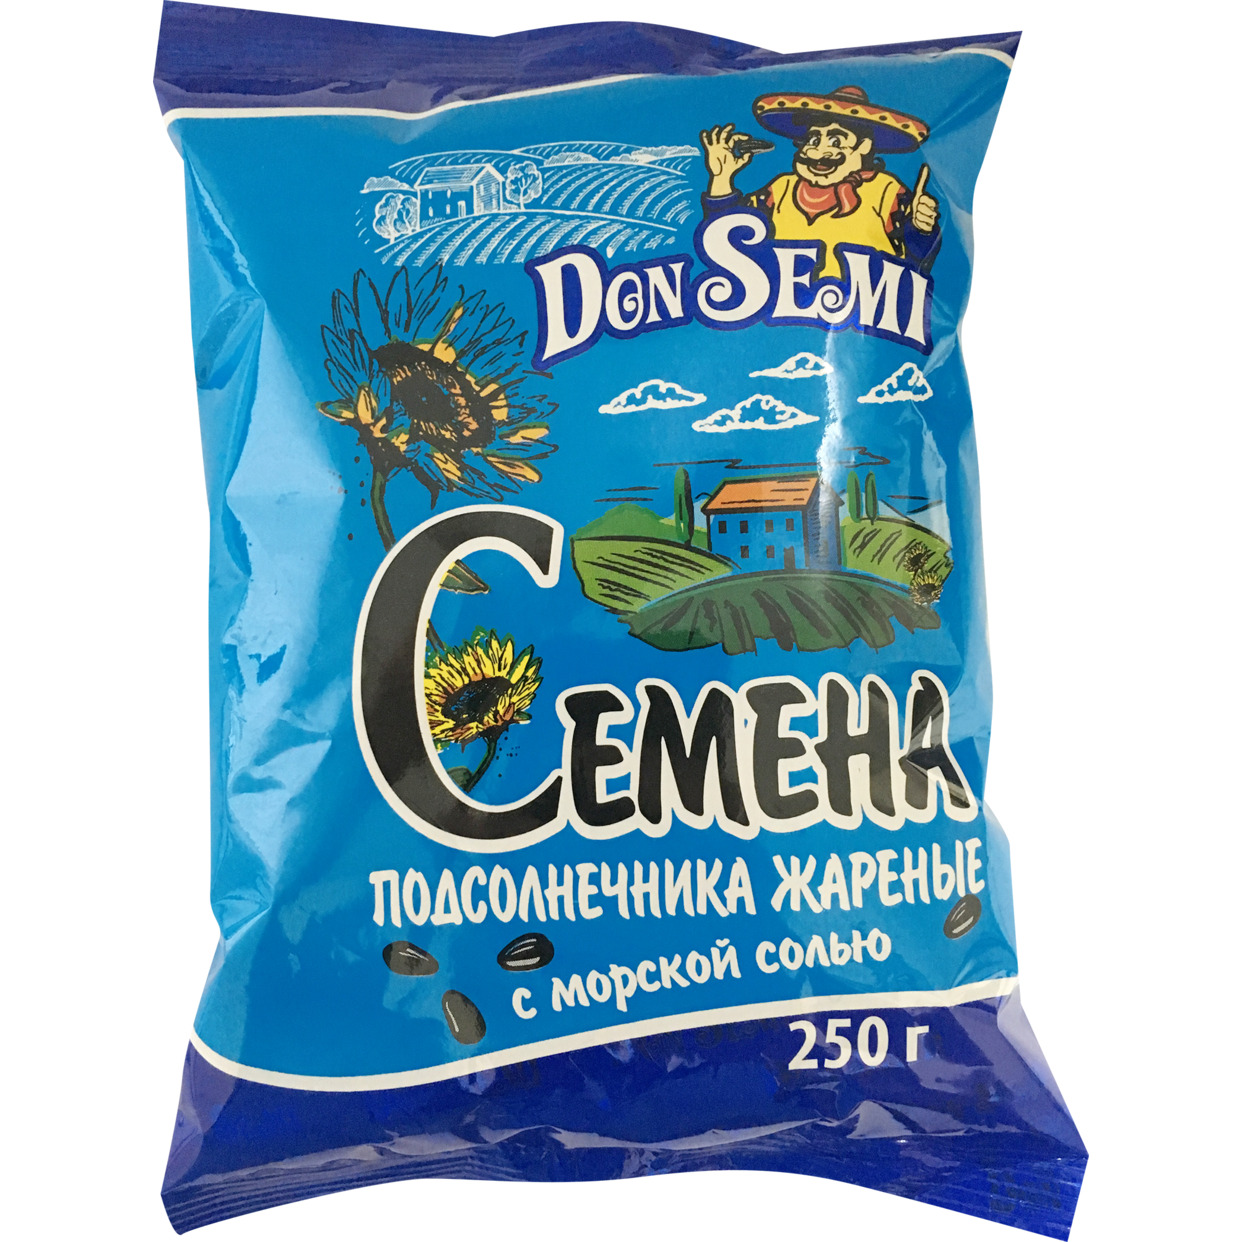 Don’ Semi Семена подсолнечника жареные с морской солью (флоу-пак) 250 г по акции в Пятерочке